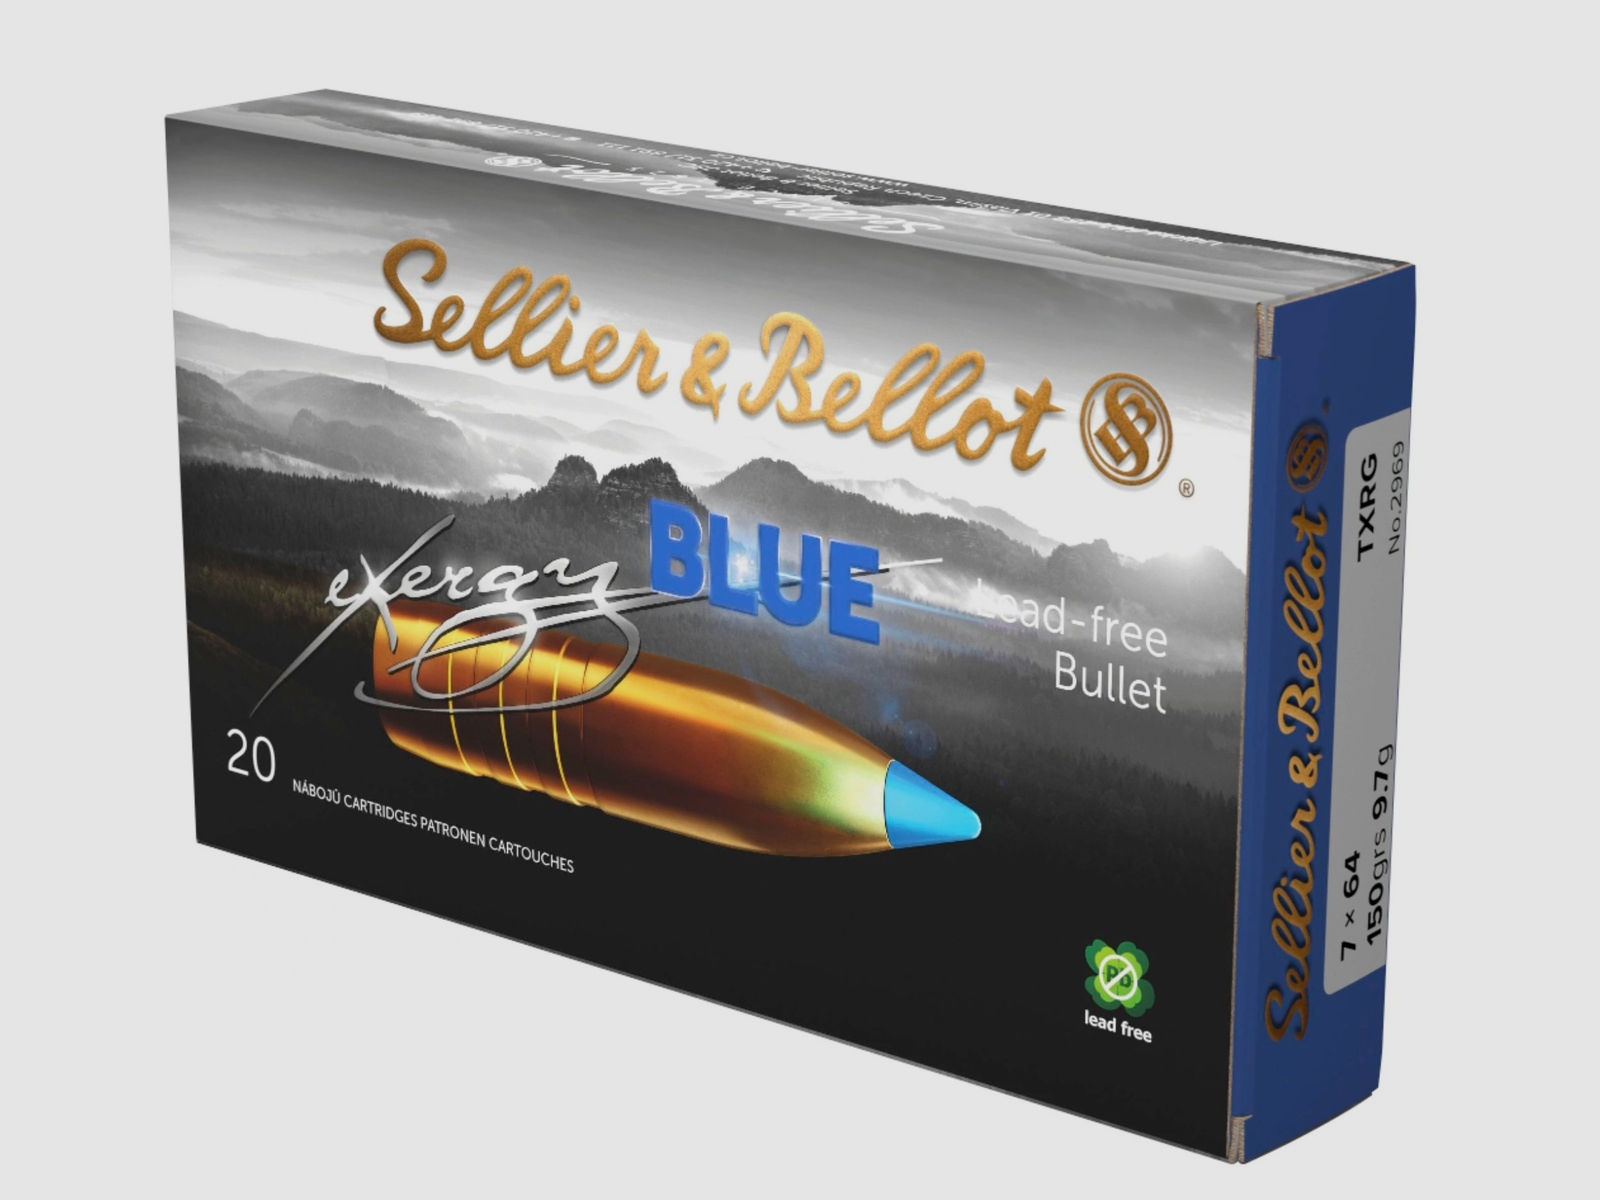 Sellier & Bellot 2003951 7x64 TXRG blue 9,7g 150grs 20 Stück bleifrei Büchsenmunition